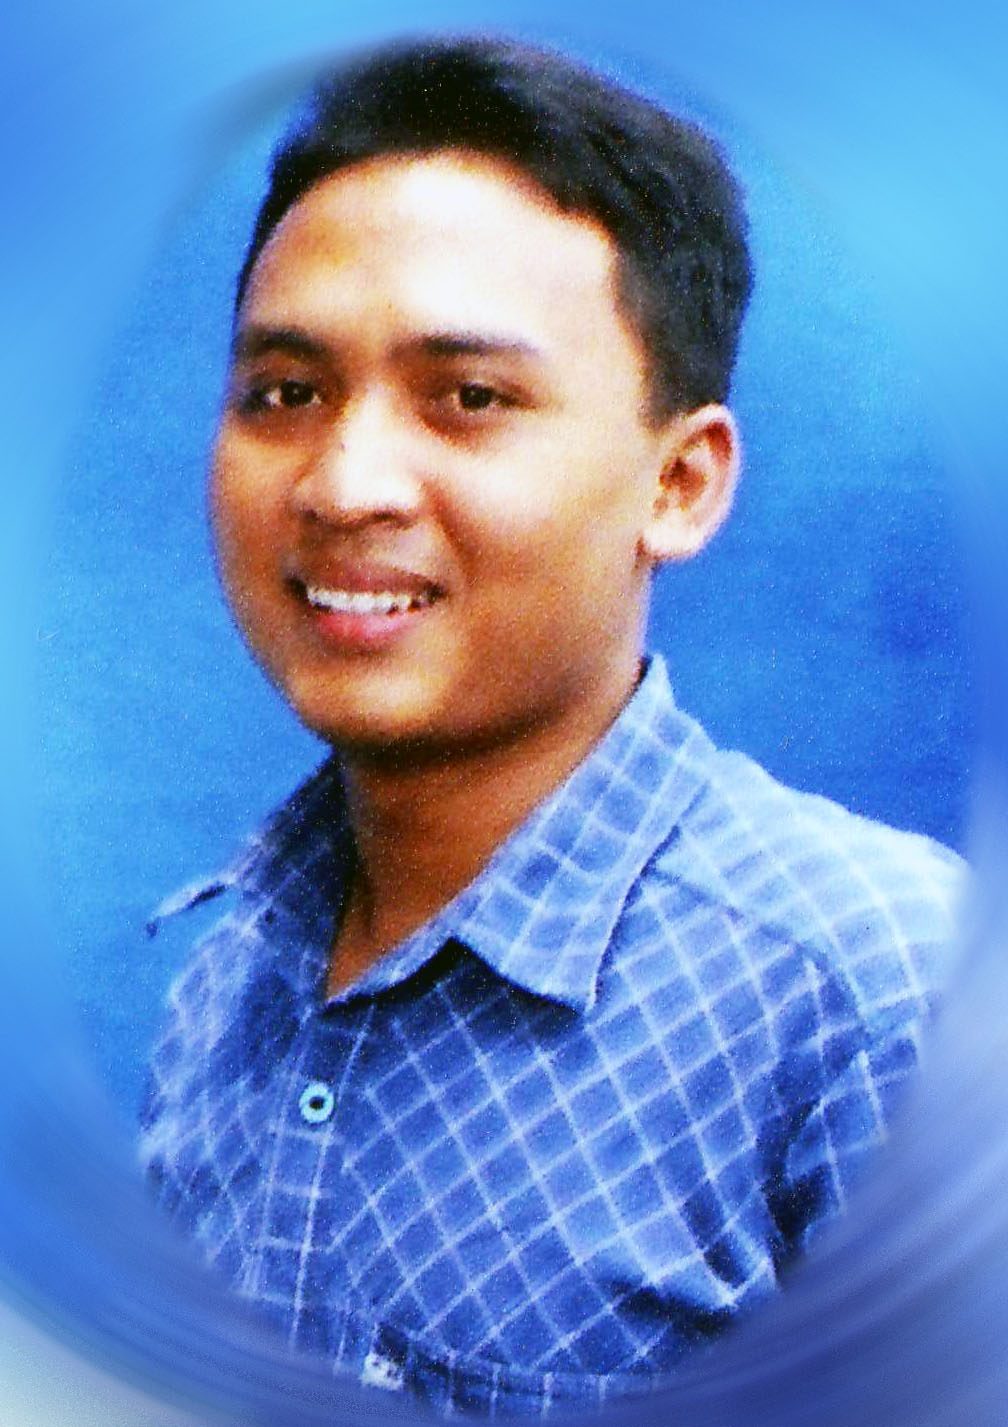 Ini waktu jadi koordinator wisuda di ITS Surabaya.